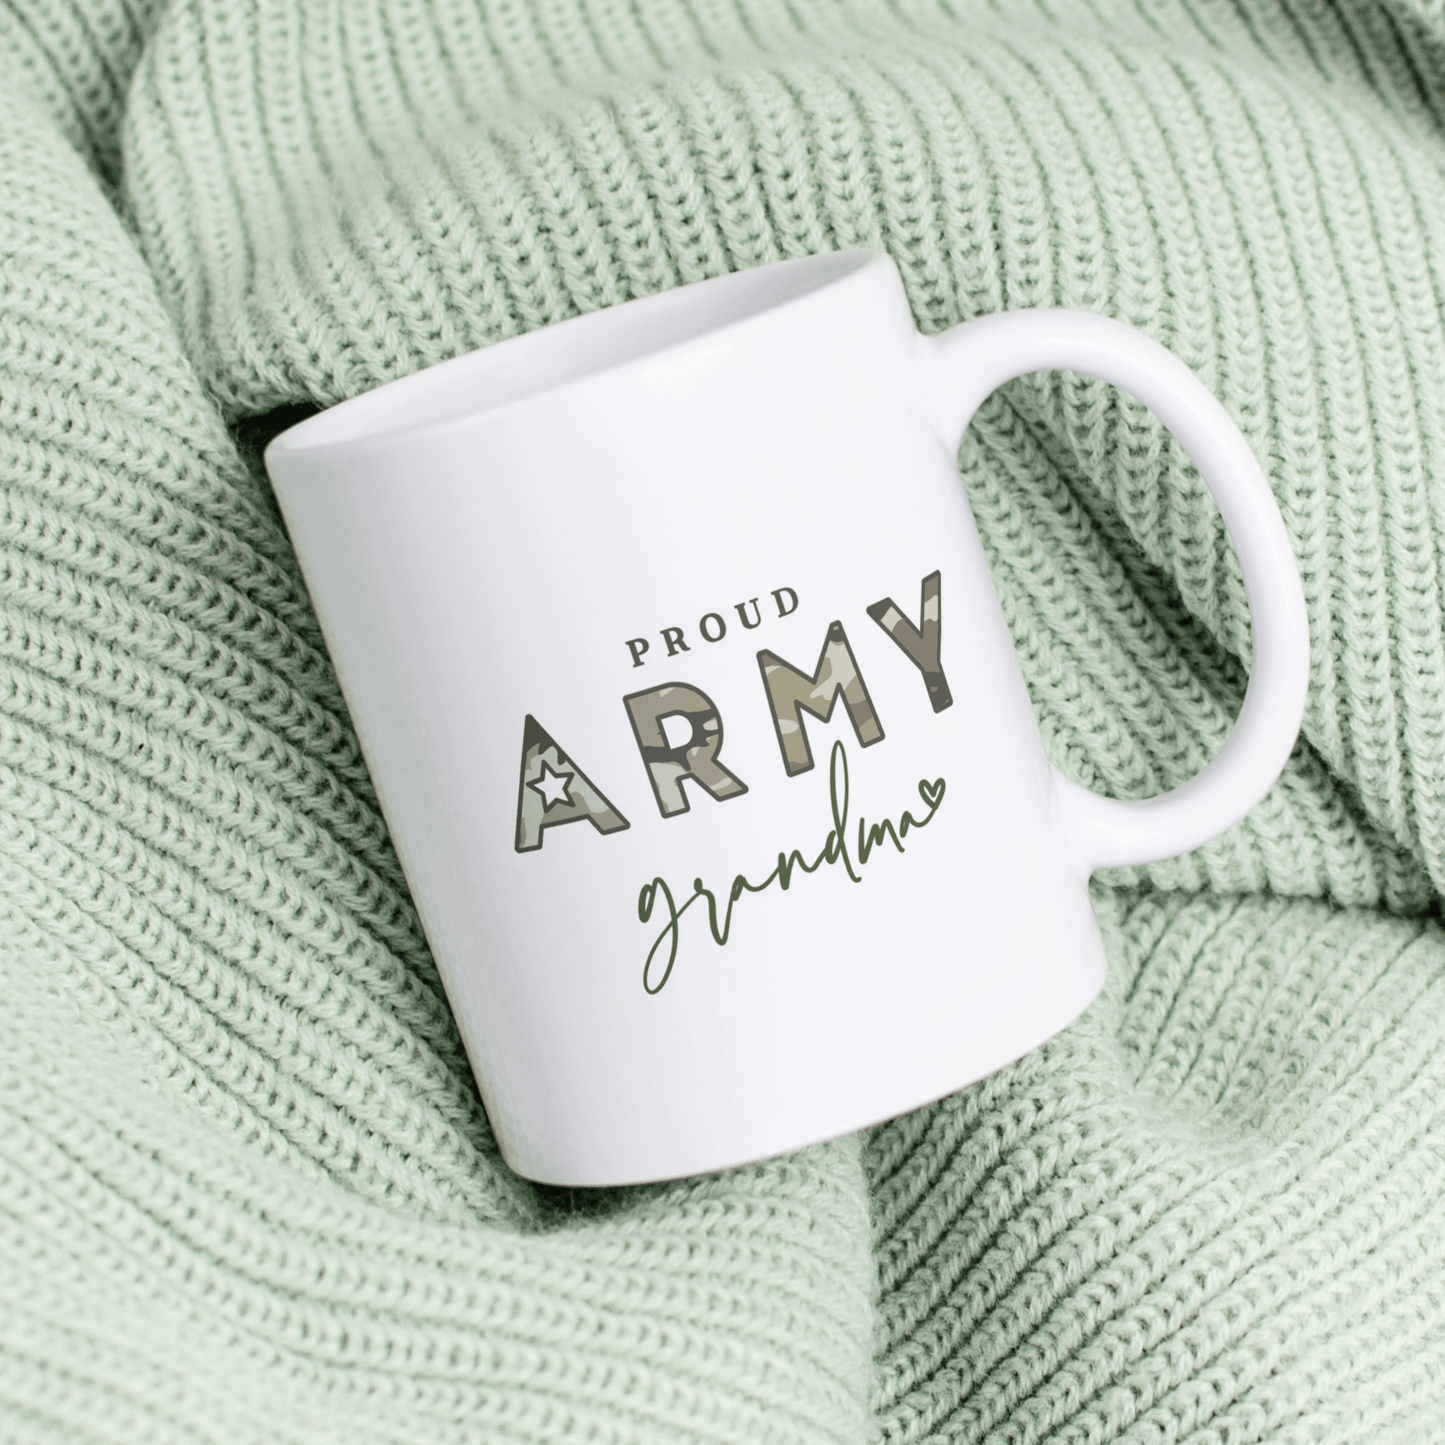 Army Grandma Mug (11 oz.)